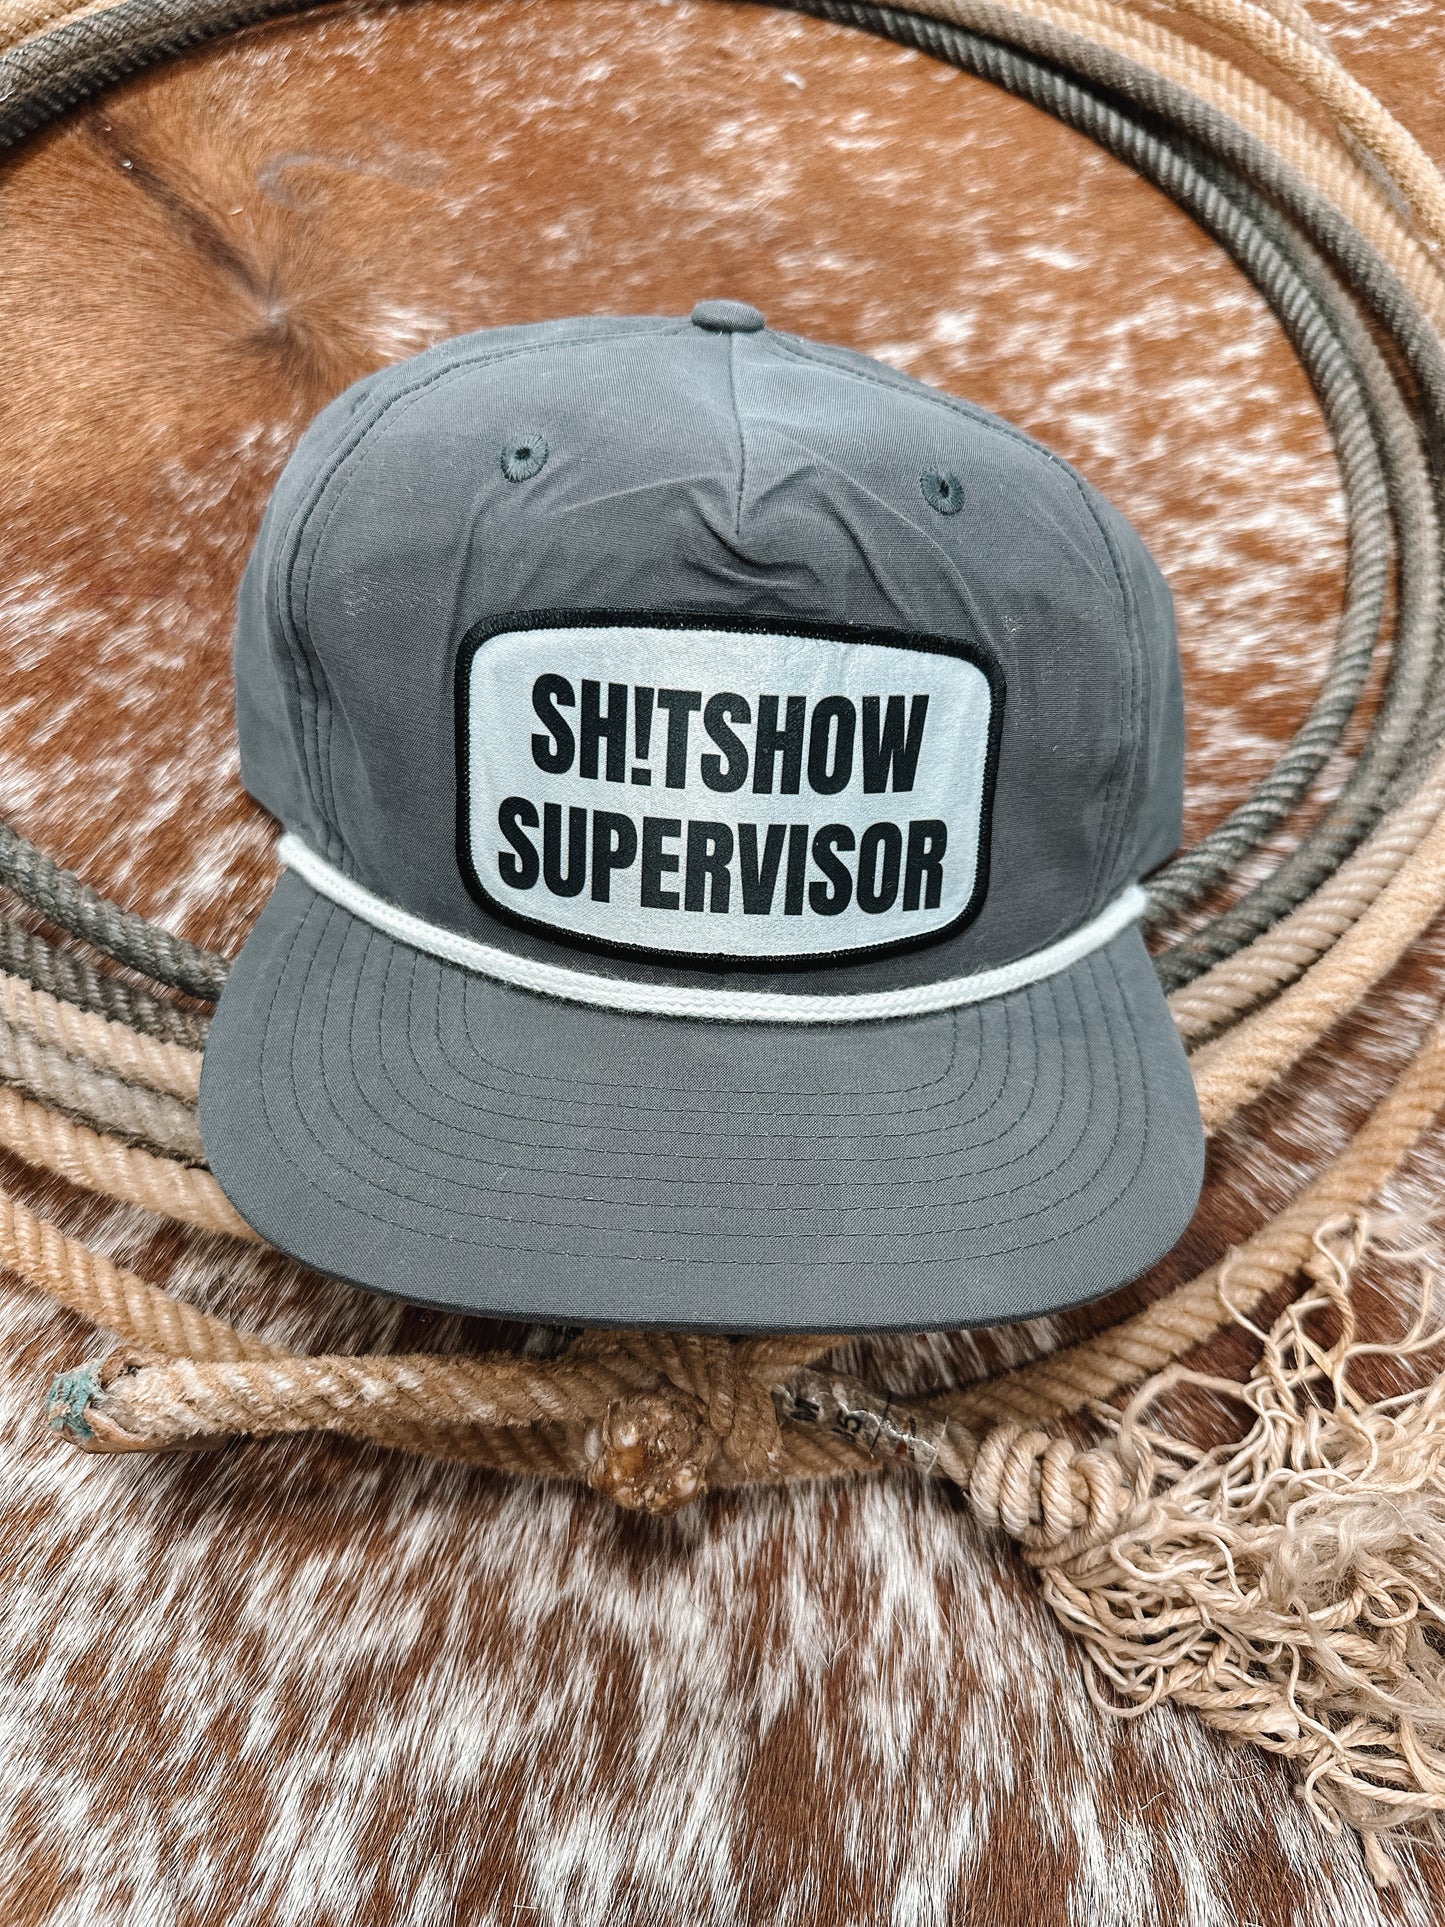 SH!TSHOW SUPERVISOR